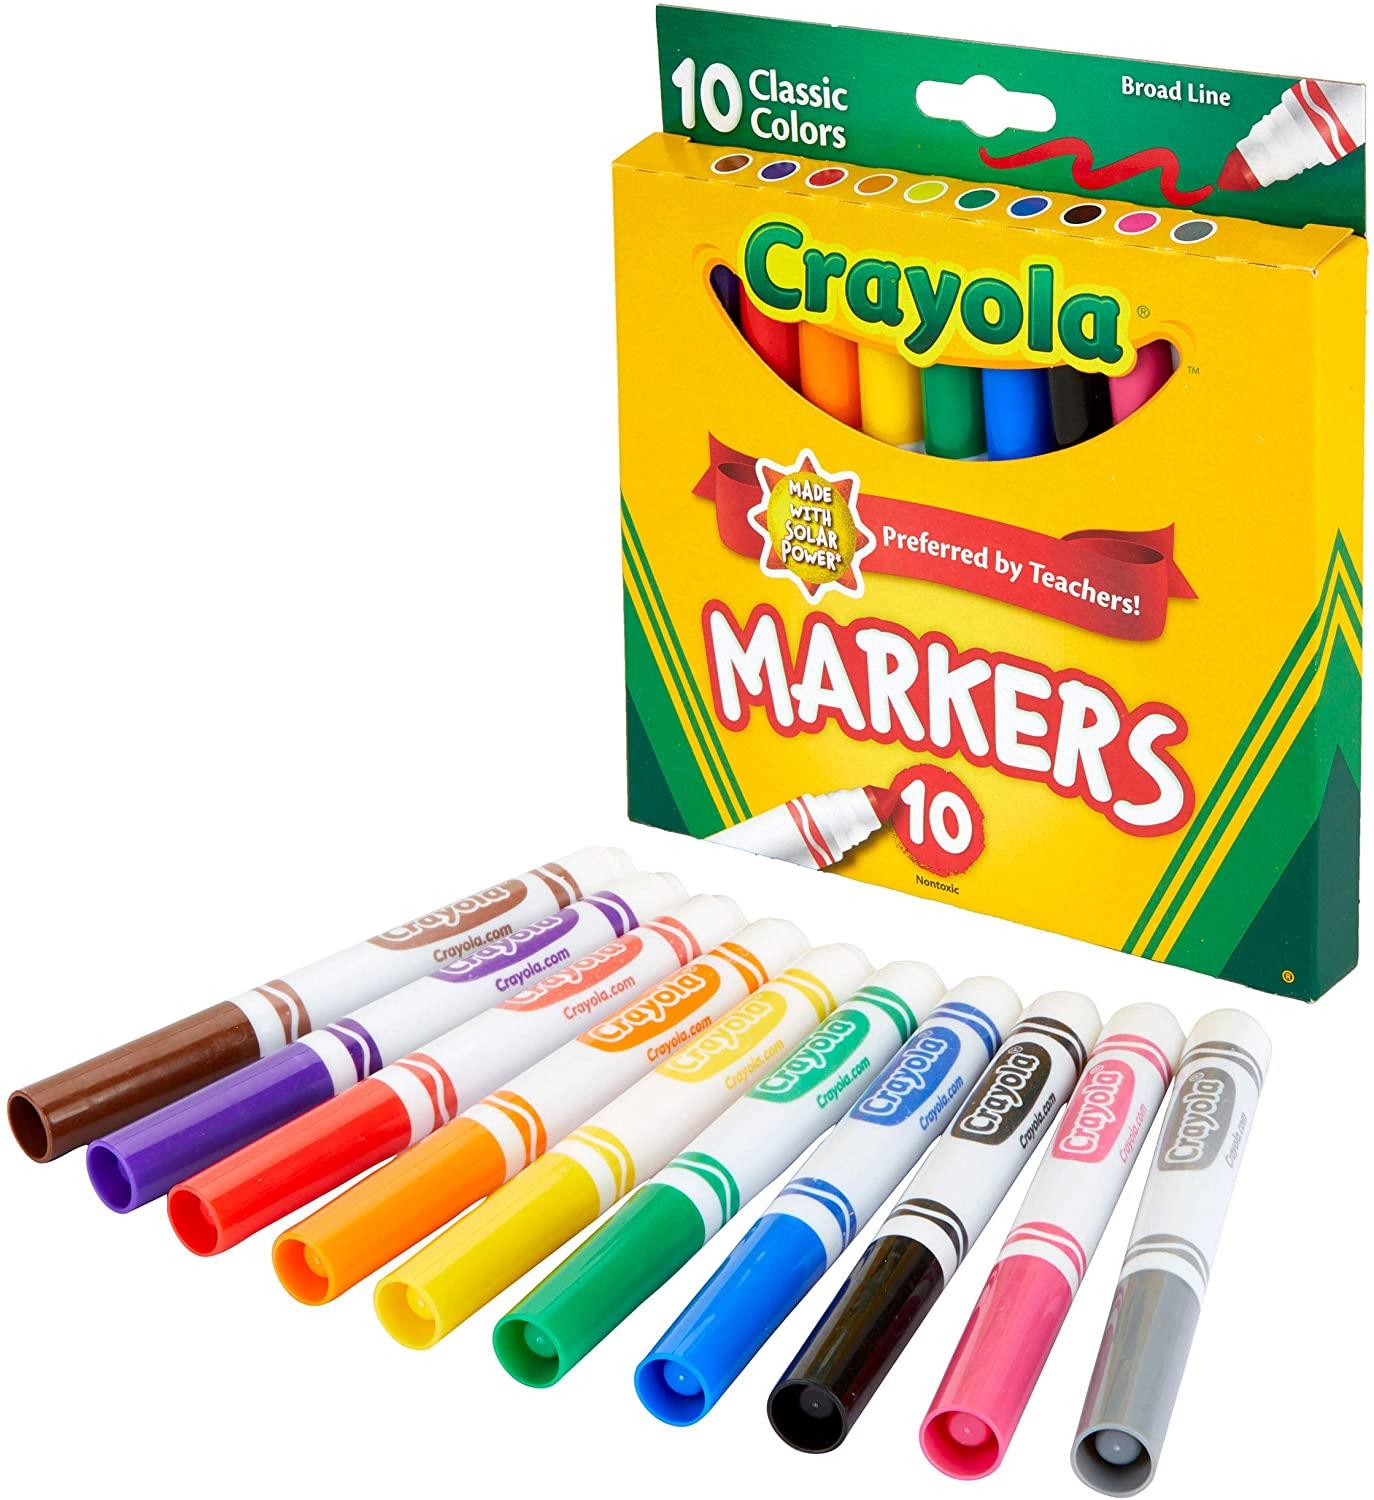 Crayola Regular Size Crayons 8 ct